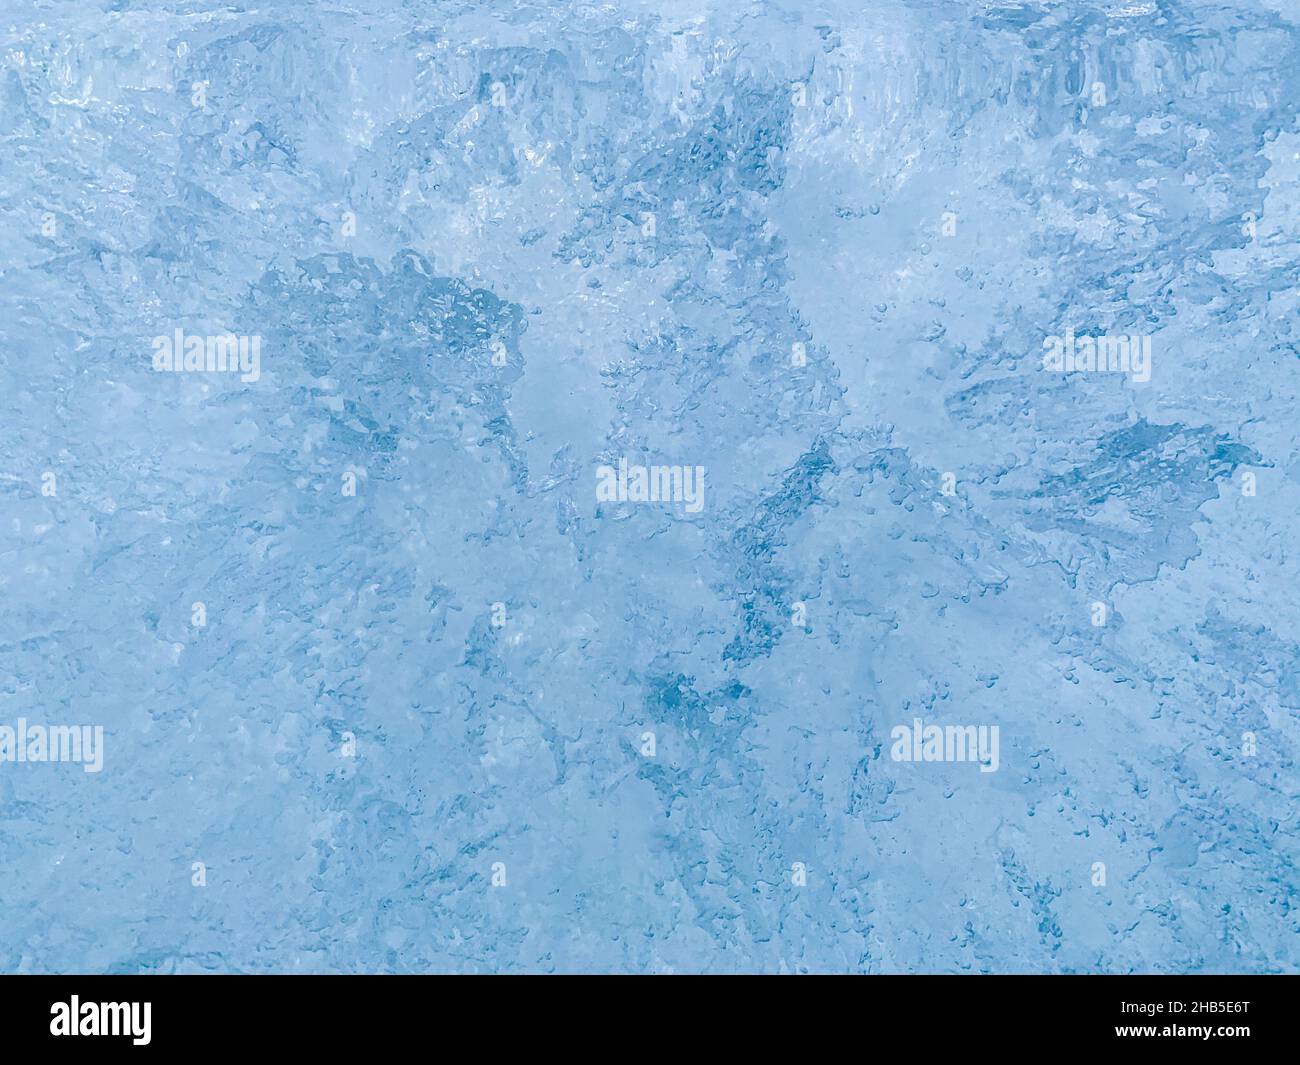 Arrière-plan bleu abstrait.Modèles de glace avec motifs divergents. Banque D'Images